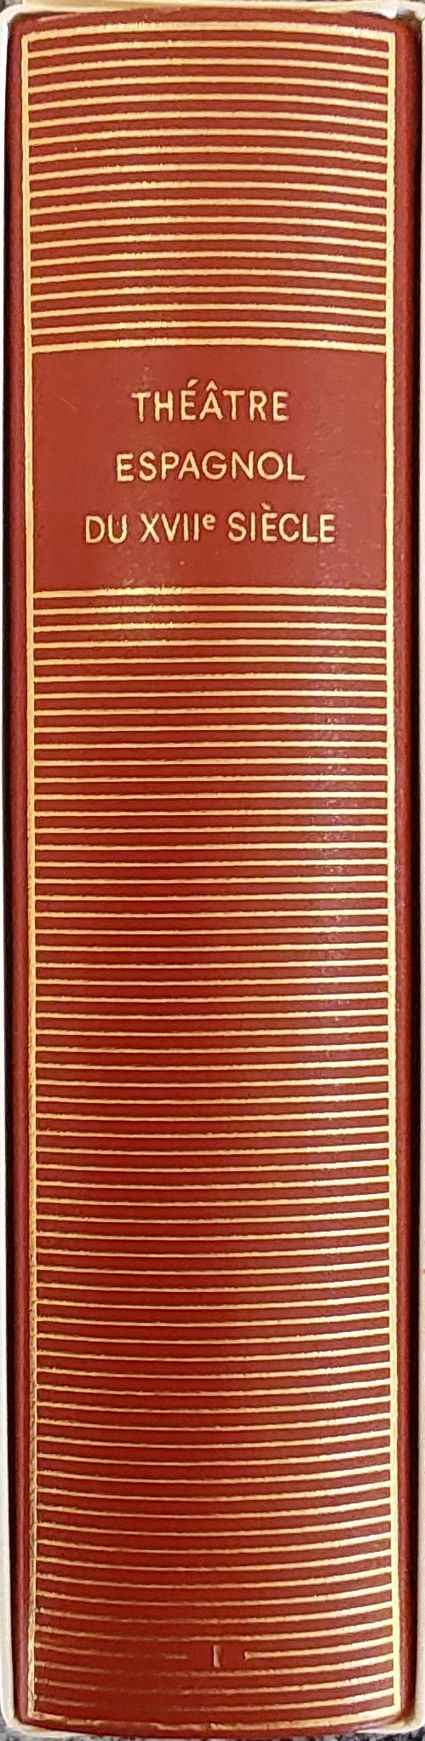 Volume 407 de Collectifs du XVIIeme dans la Bibliothèque de la Pléiade.